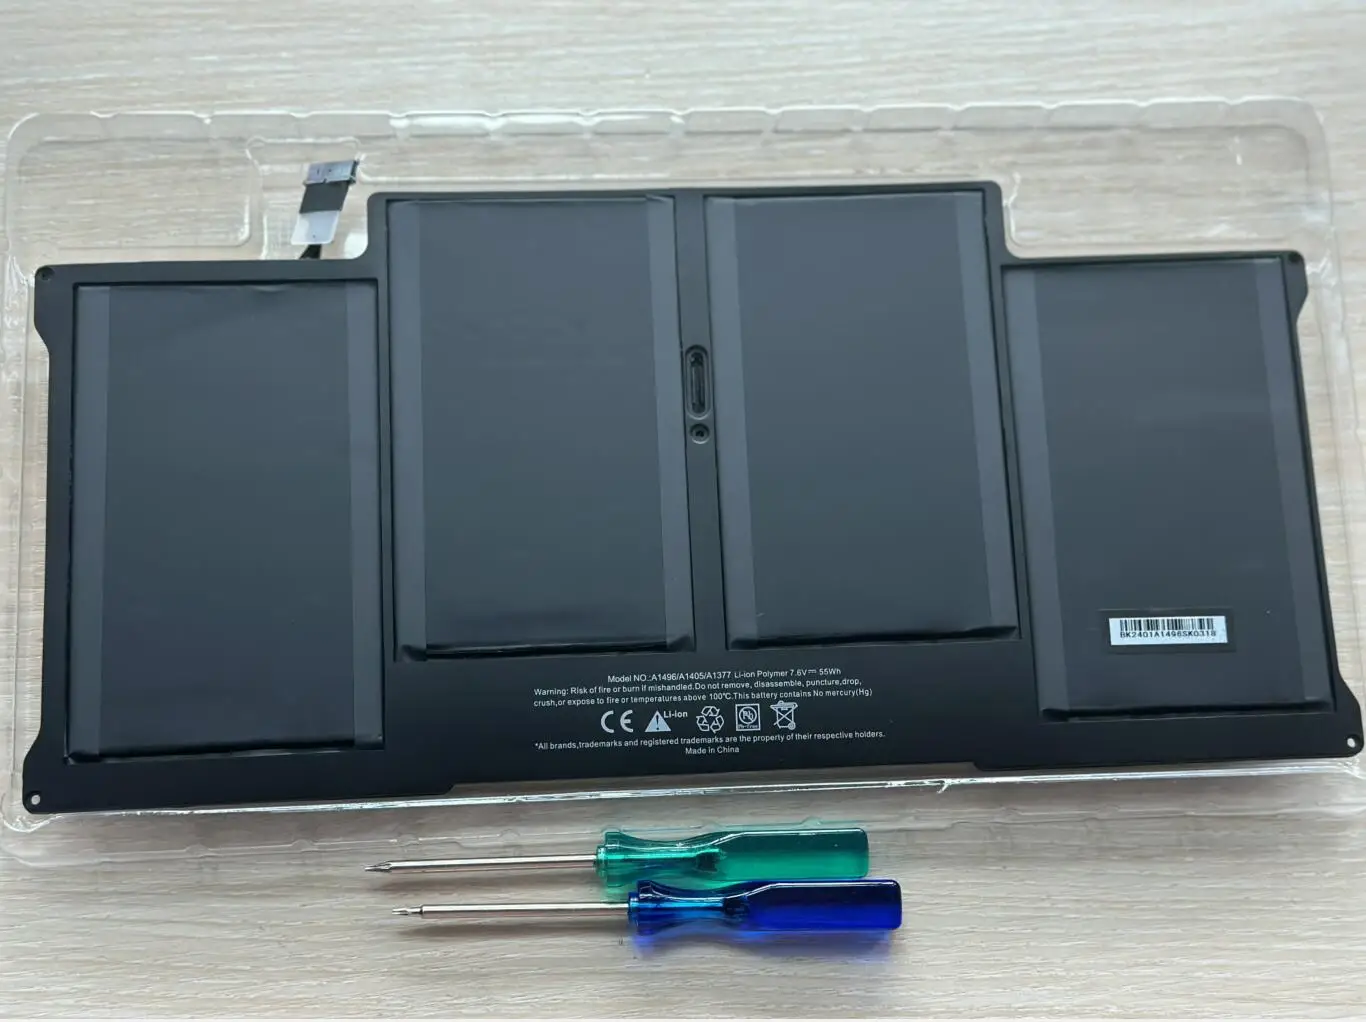 Лидер продаж! Аккумулятор A1466, A1496, A1405 для ноутбука Apple Macbook Air 13, A1466 (2012, 2013, 2014, 2015, 2017)